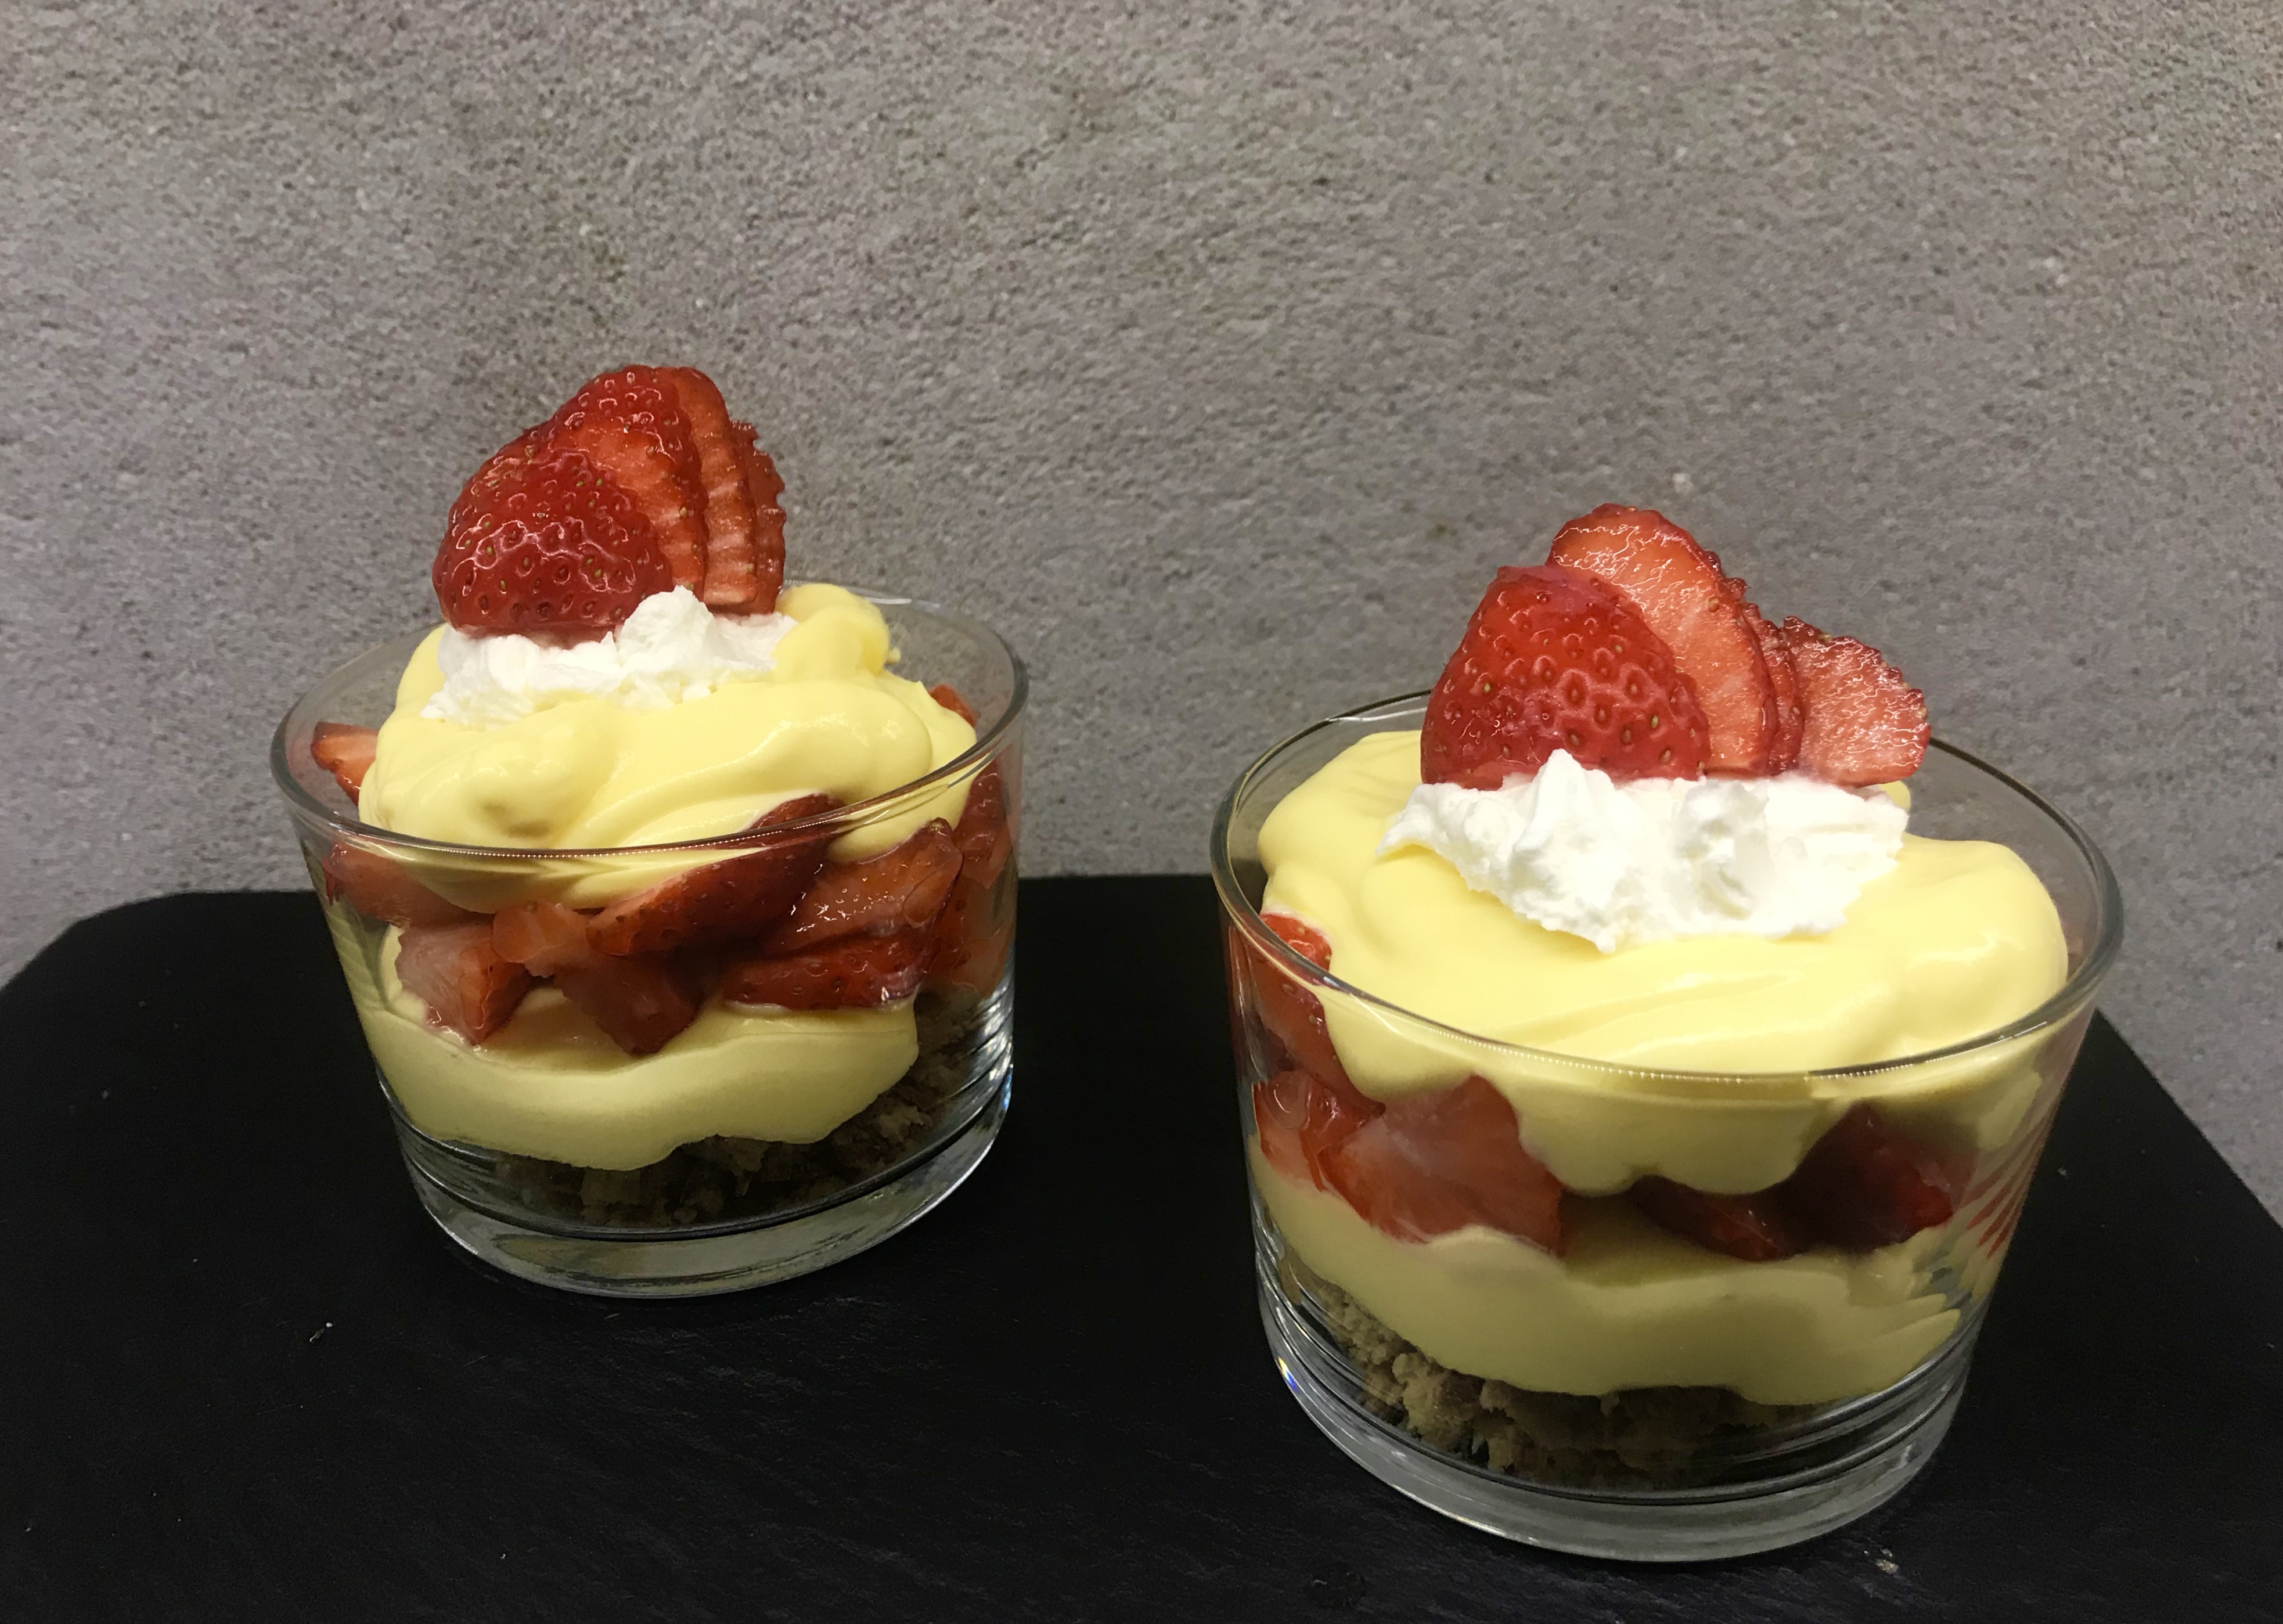 Aardbeien met advocaat crème en cantuccini – Mevrouw de Vries